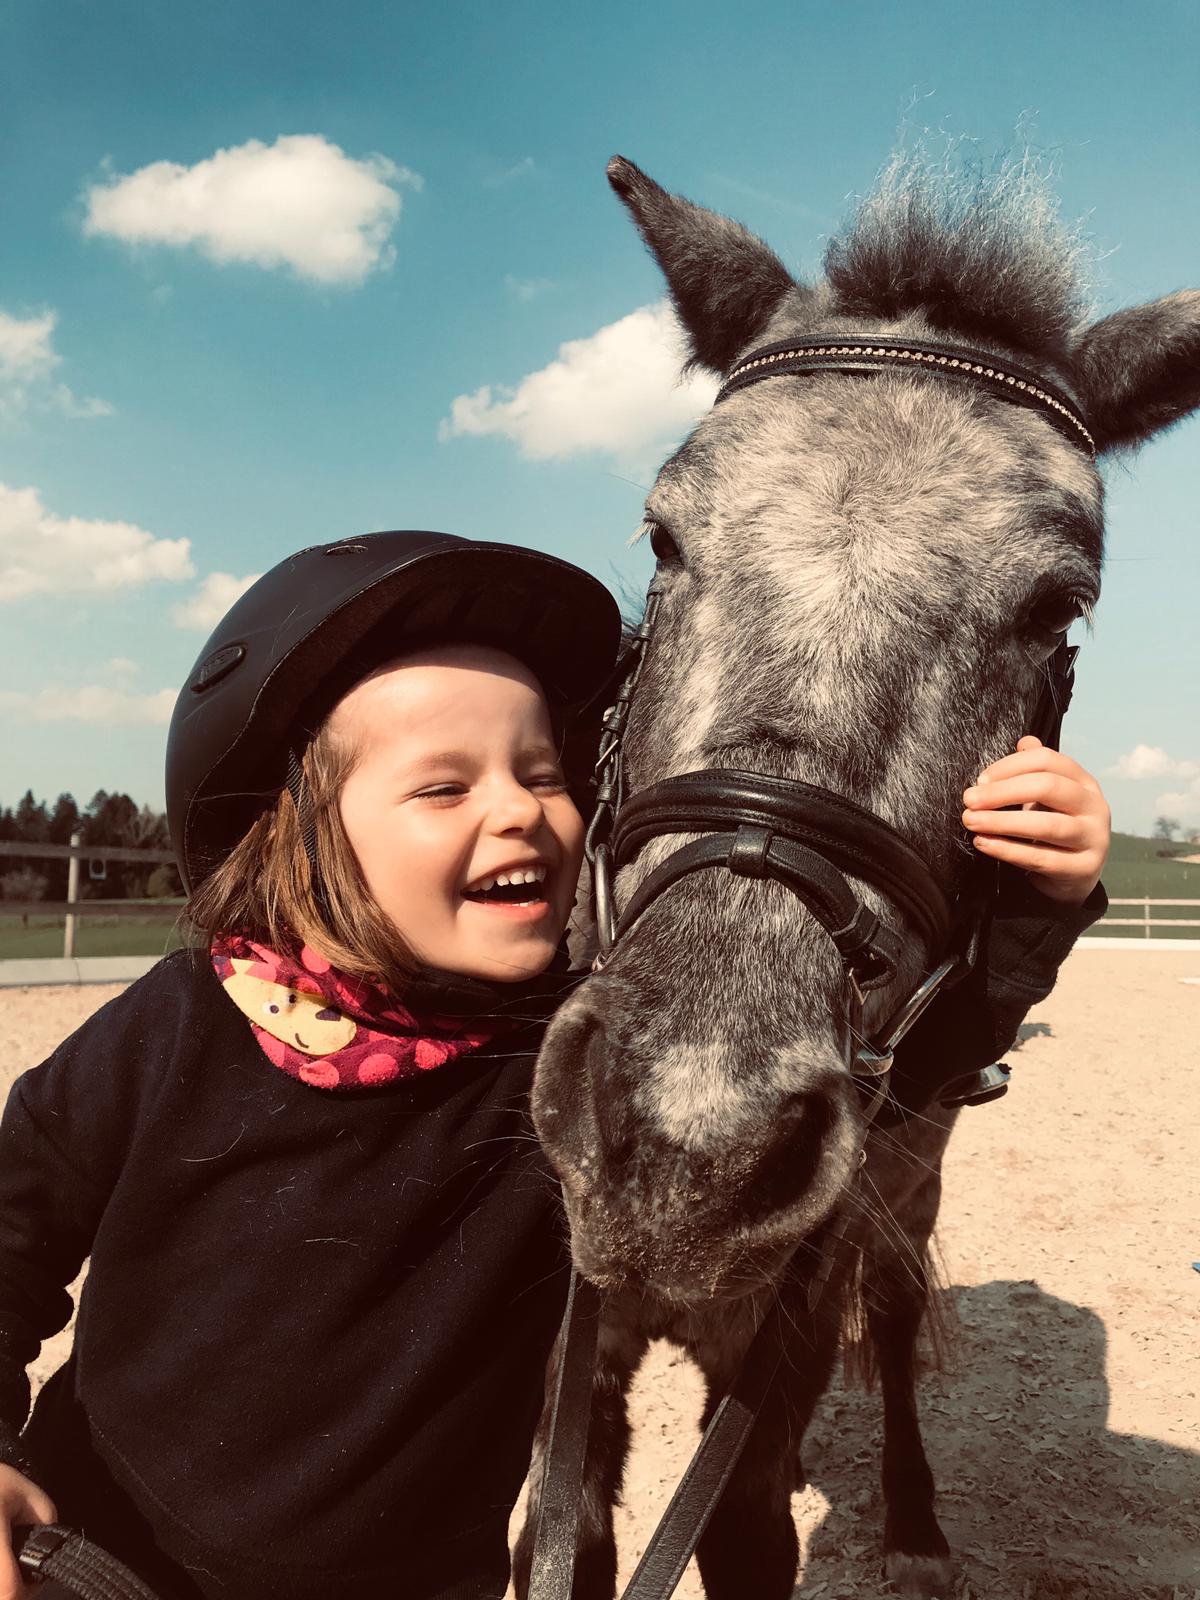  Kind mit Hut umarmt einen Pferdekopf - das Bild wird mit Klick vergrößert 